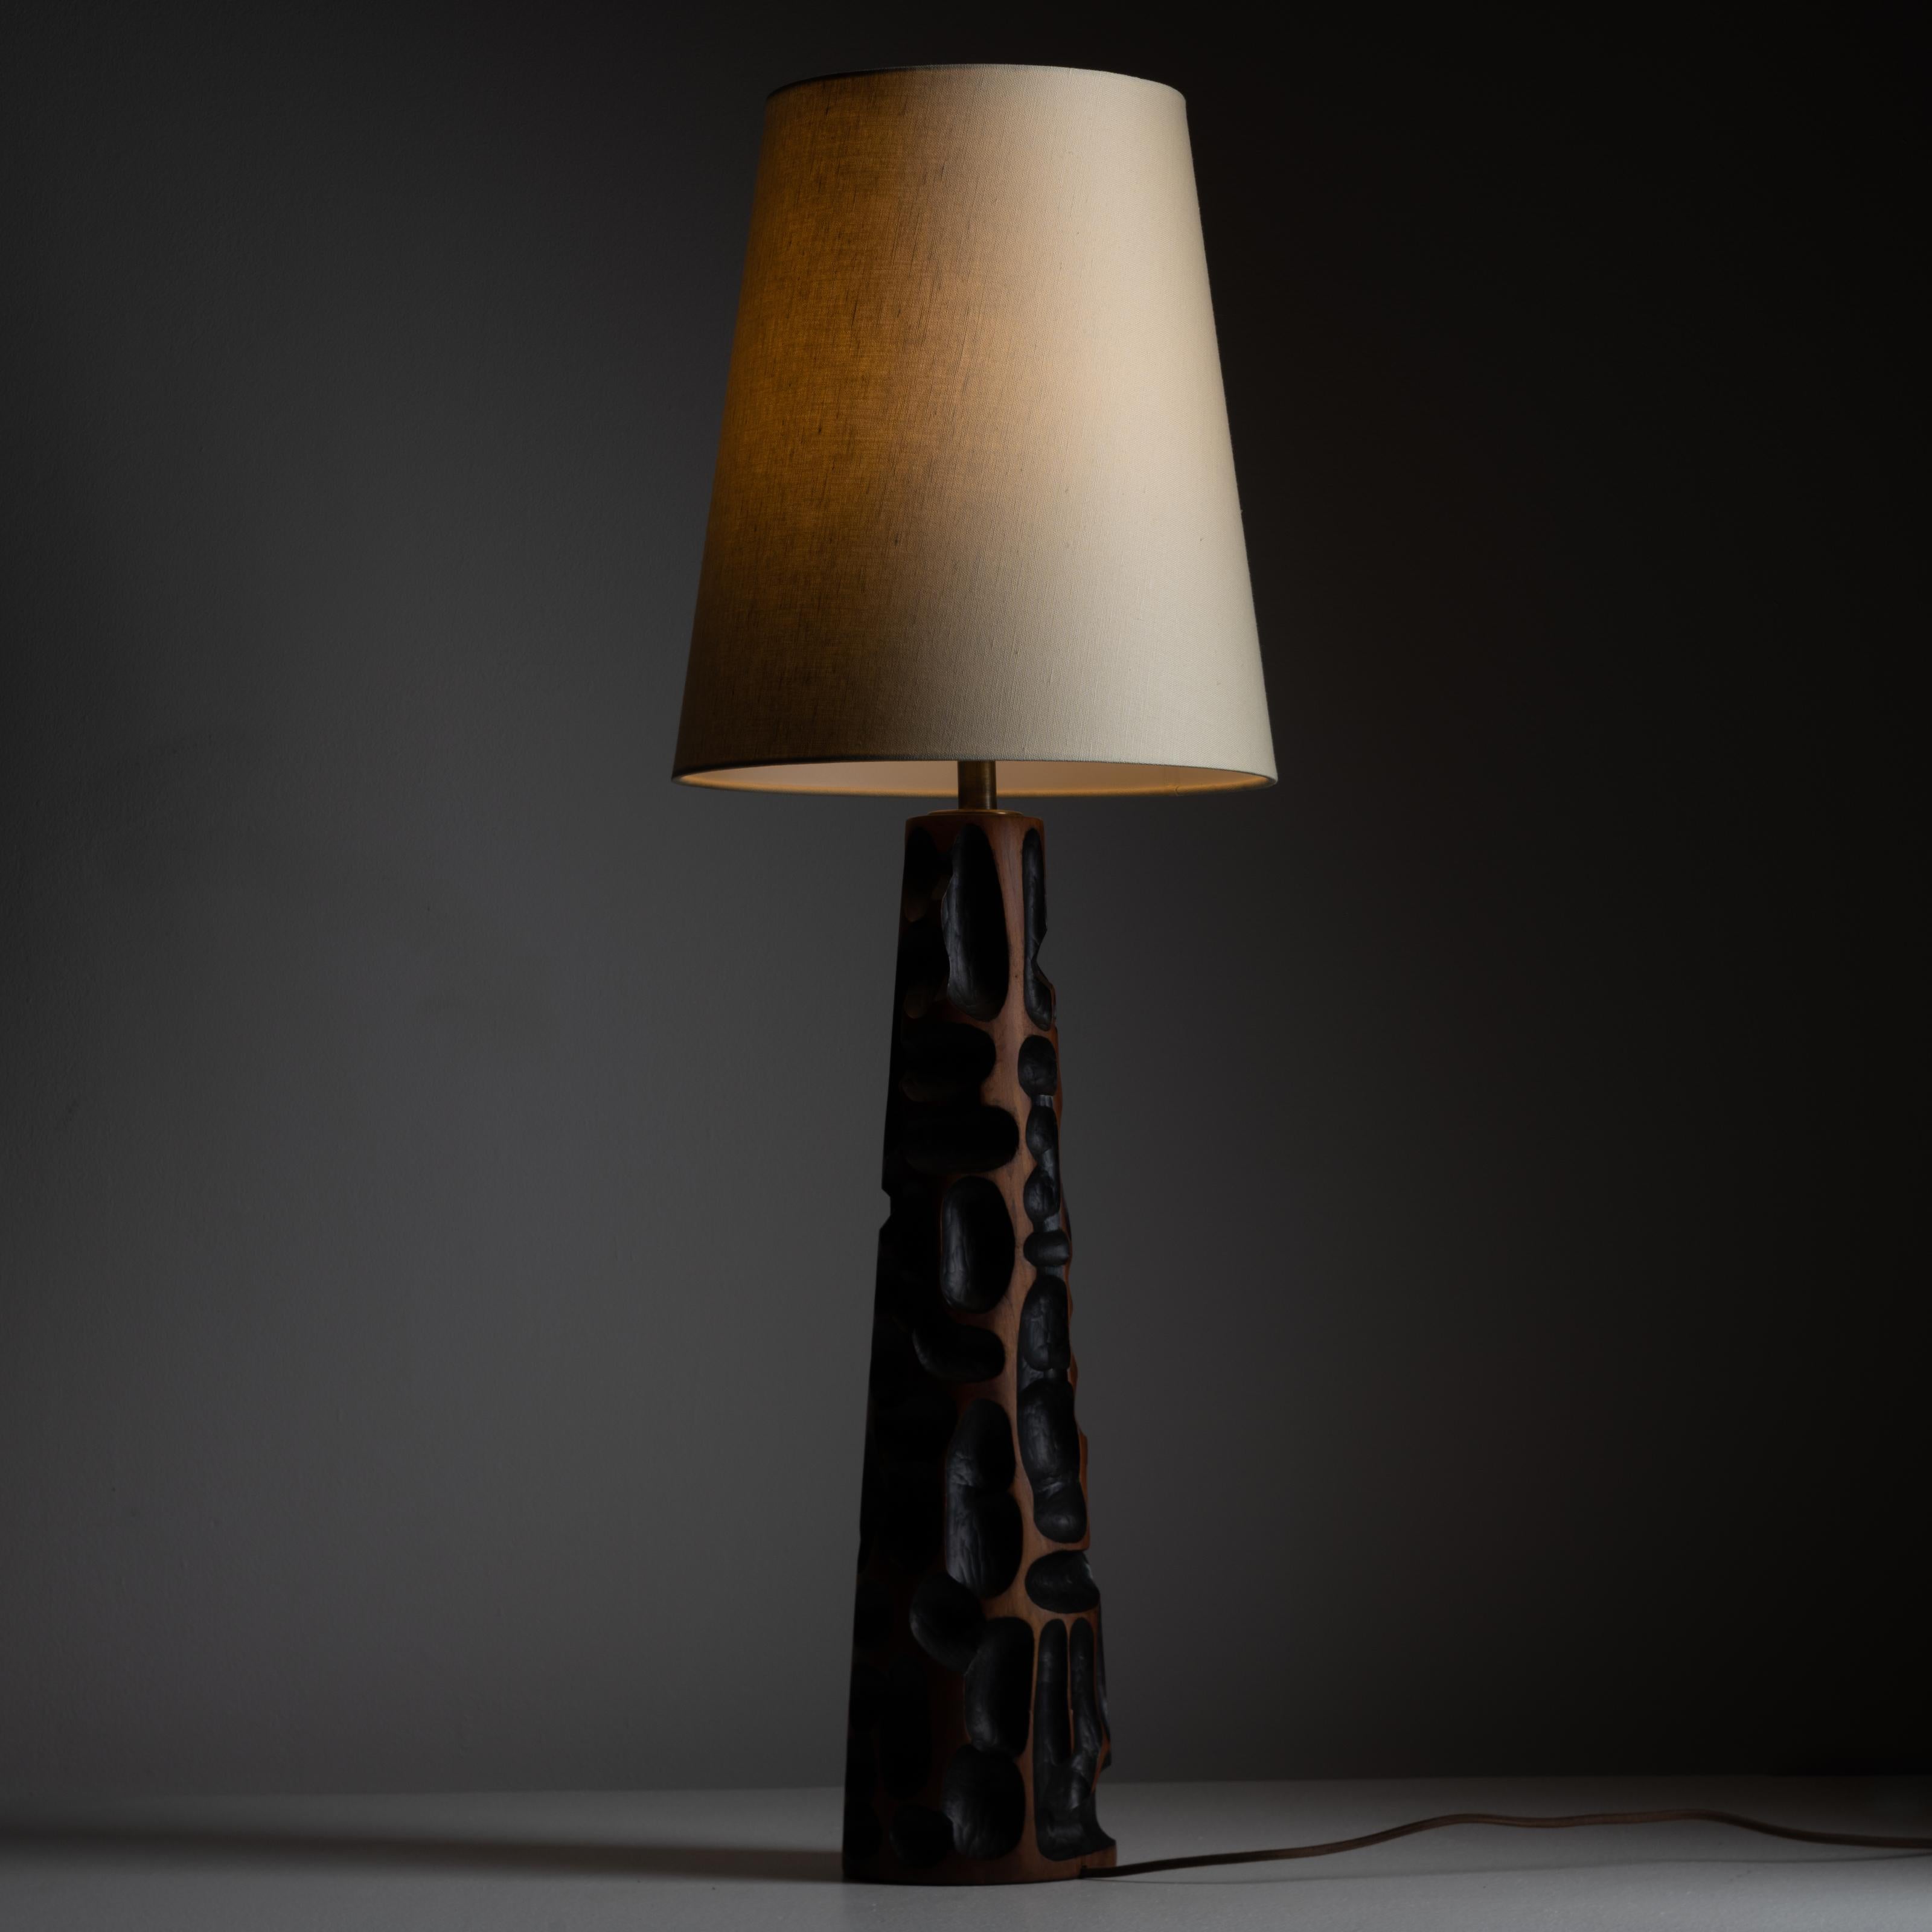 Lampe de table en bois sculpté à la main. Conçu et fabriqué en Italie, vers 1960. Lampe de table unique en bois sculpté à la main avec des intérieurs sculptés noircis. Nous recommandons d'utiliser une ampoule E27, 40w maximum. Câblé pour les normes